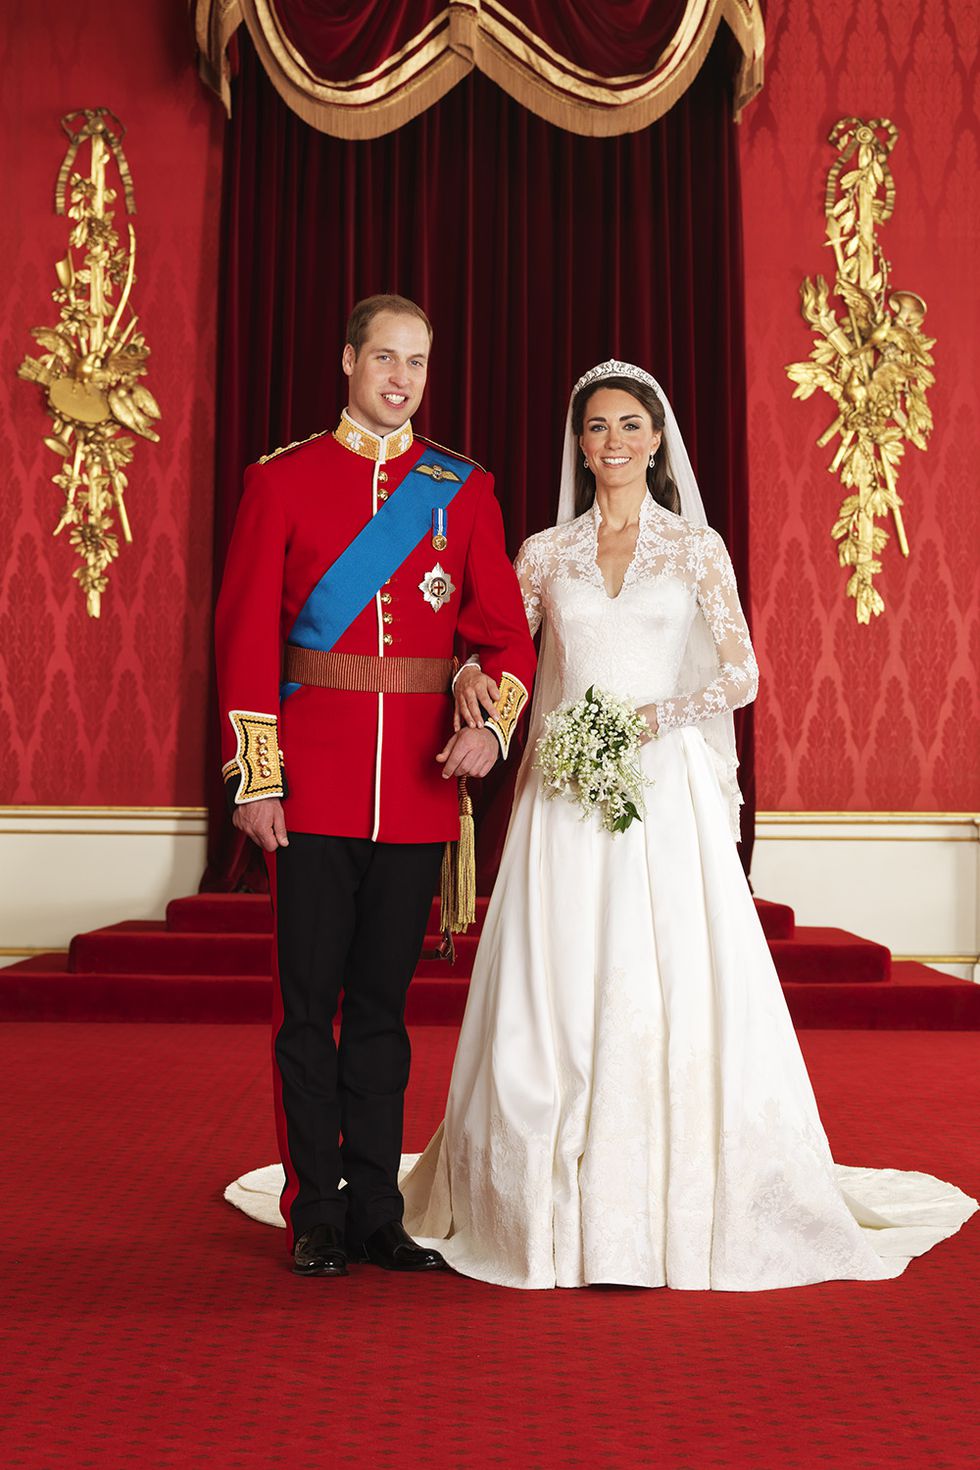 Váy cưới cổ tích được dự đoán là xu hướng trong năm 2022. Đây là kiểu váy hoàn hảo và phù hợp với mọi dáng người, với thiết kế ôm sát đường cong của phần thân trên, xòe ra dưới đầu gối.  Trên thực tế, đó là phong cách phổ biến đến mức ngay cả bản thân Kate Middleton cũng mặc một bộ đồ khá giống khi cô kết hôn với Hoàng tử William vào năm 2011 và tiếp tục thu hút sự chú ý cho đến ngày nay.